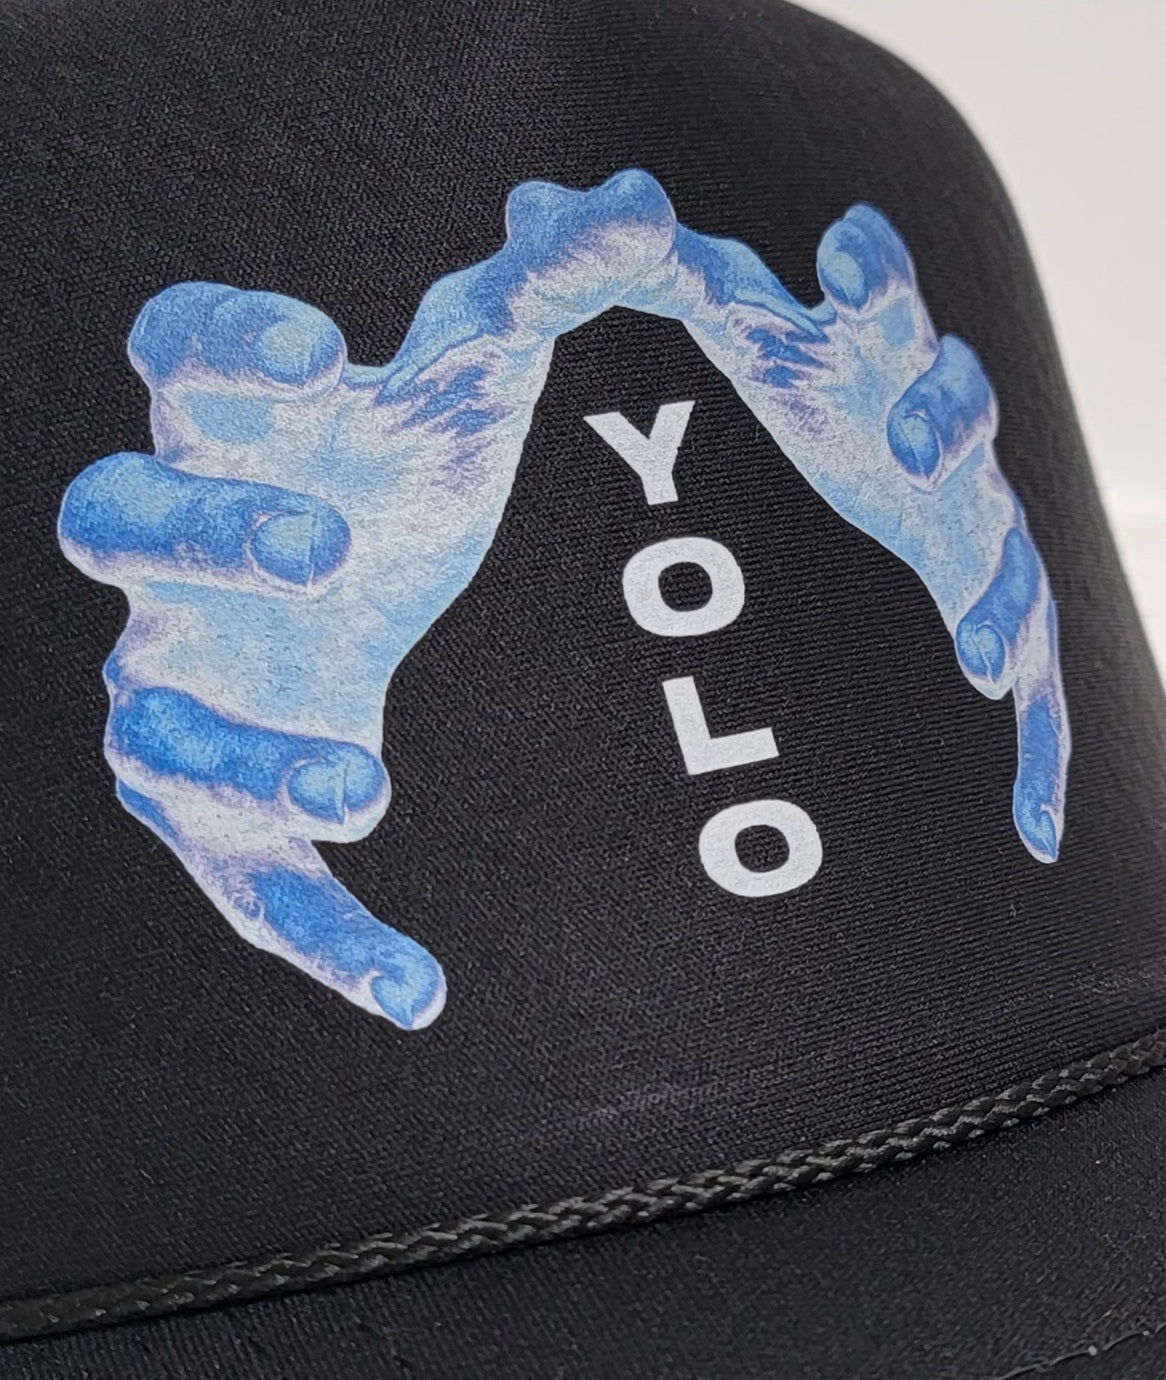 YOLO Revolution Trucker Hat